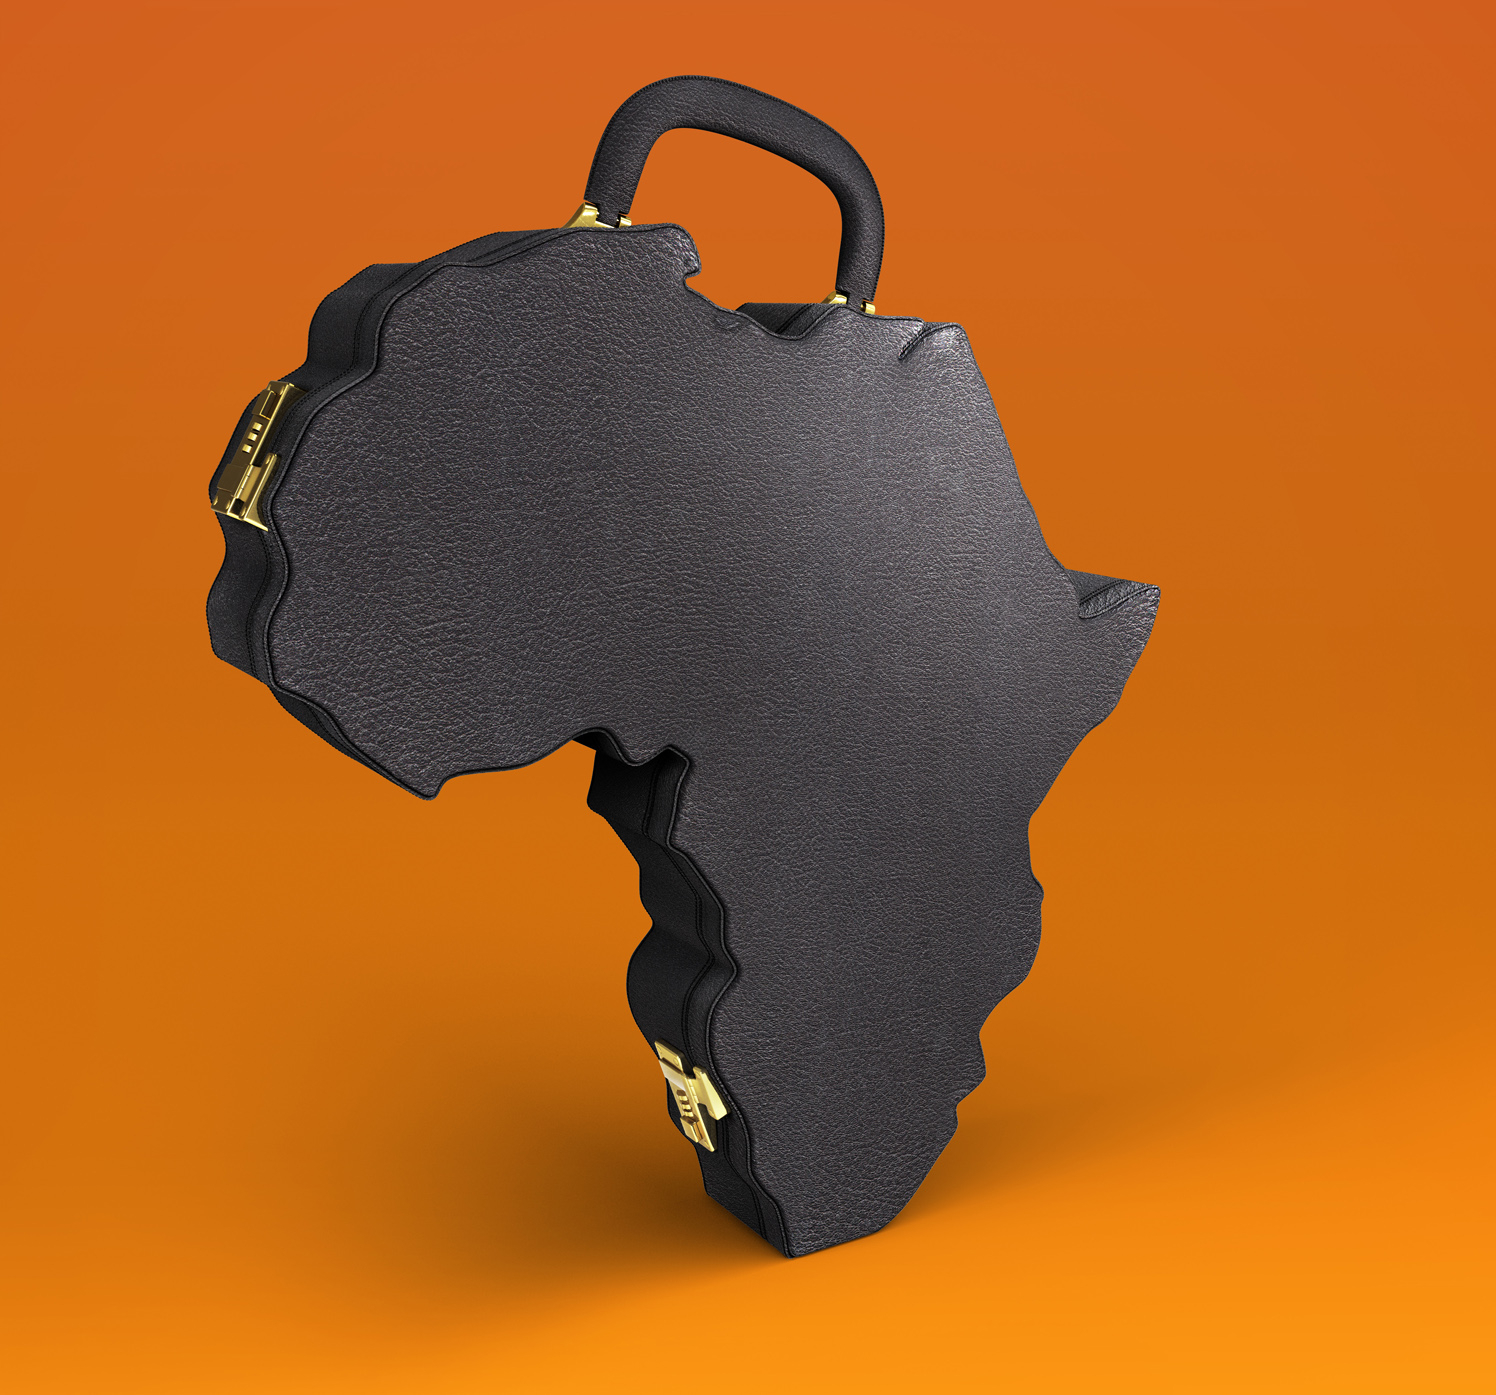 Africa Suitcase